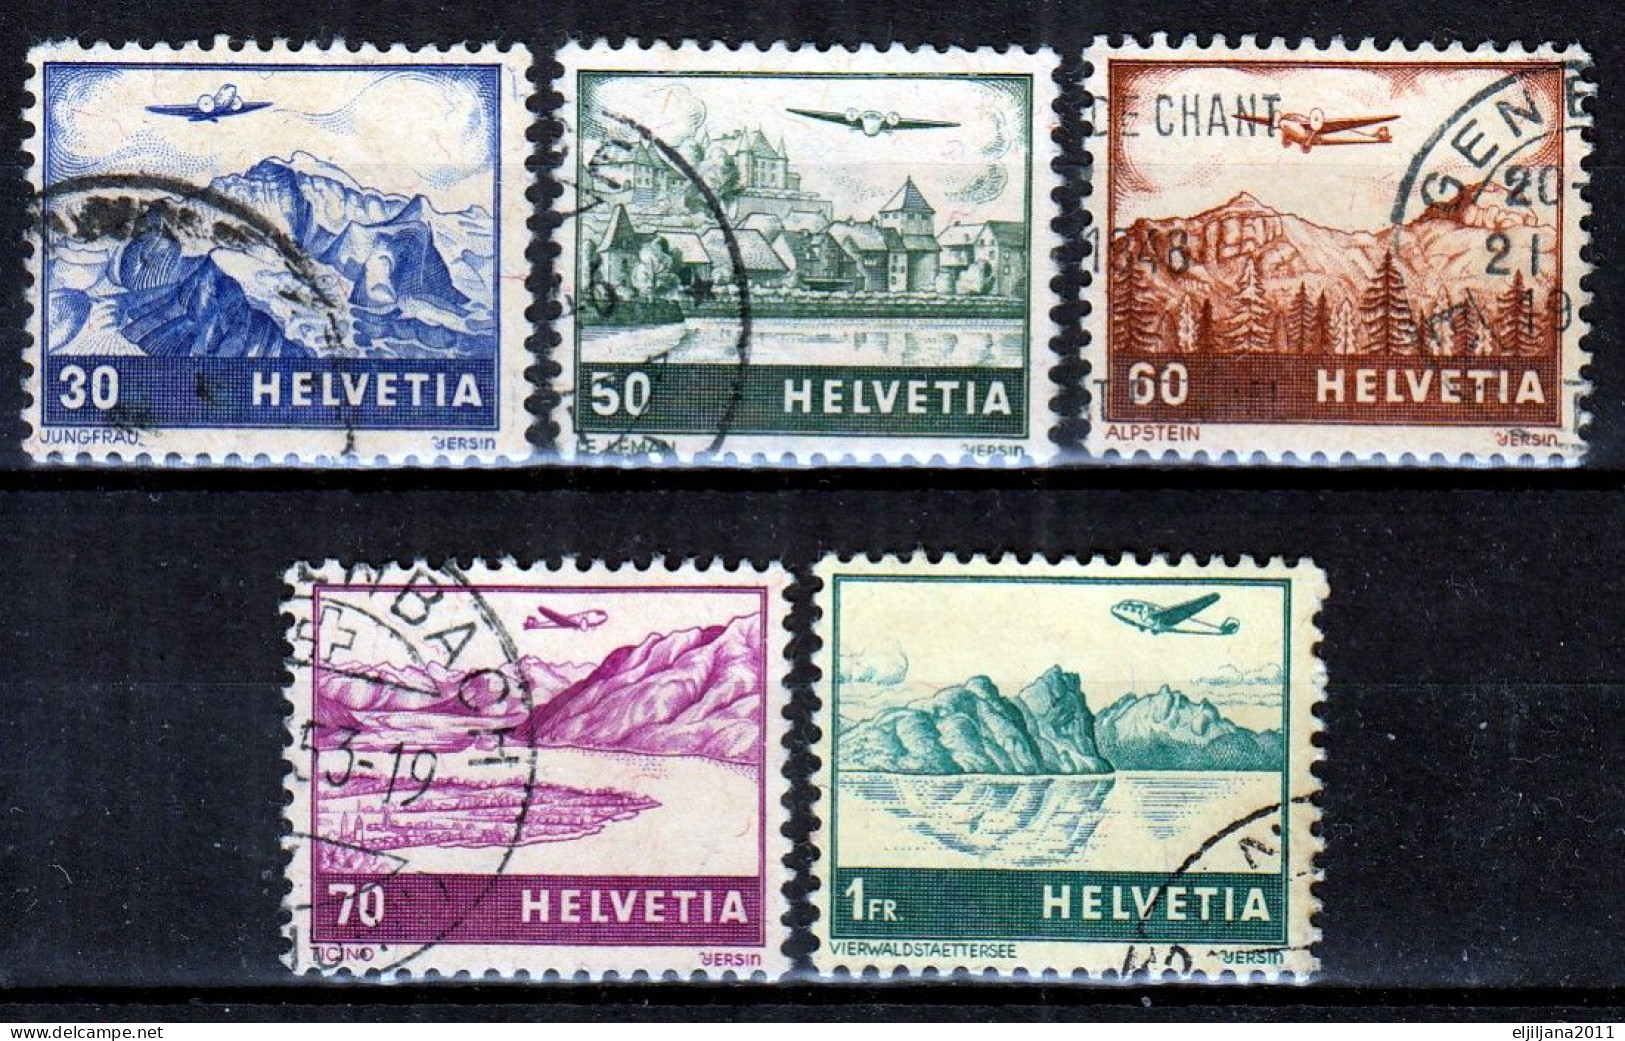 Switzerland / Helvetia / Schweiz / Suisse 1941 ⁕ Airmail / Flugzeug über Landschaften ⁕ 5v Used - Oblitérés